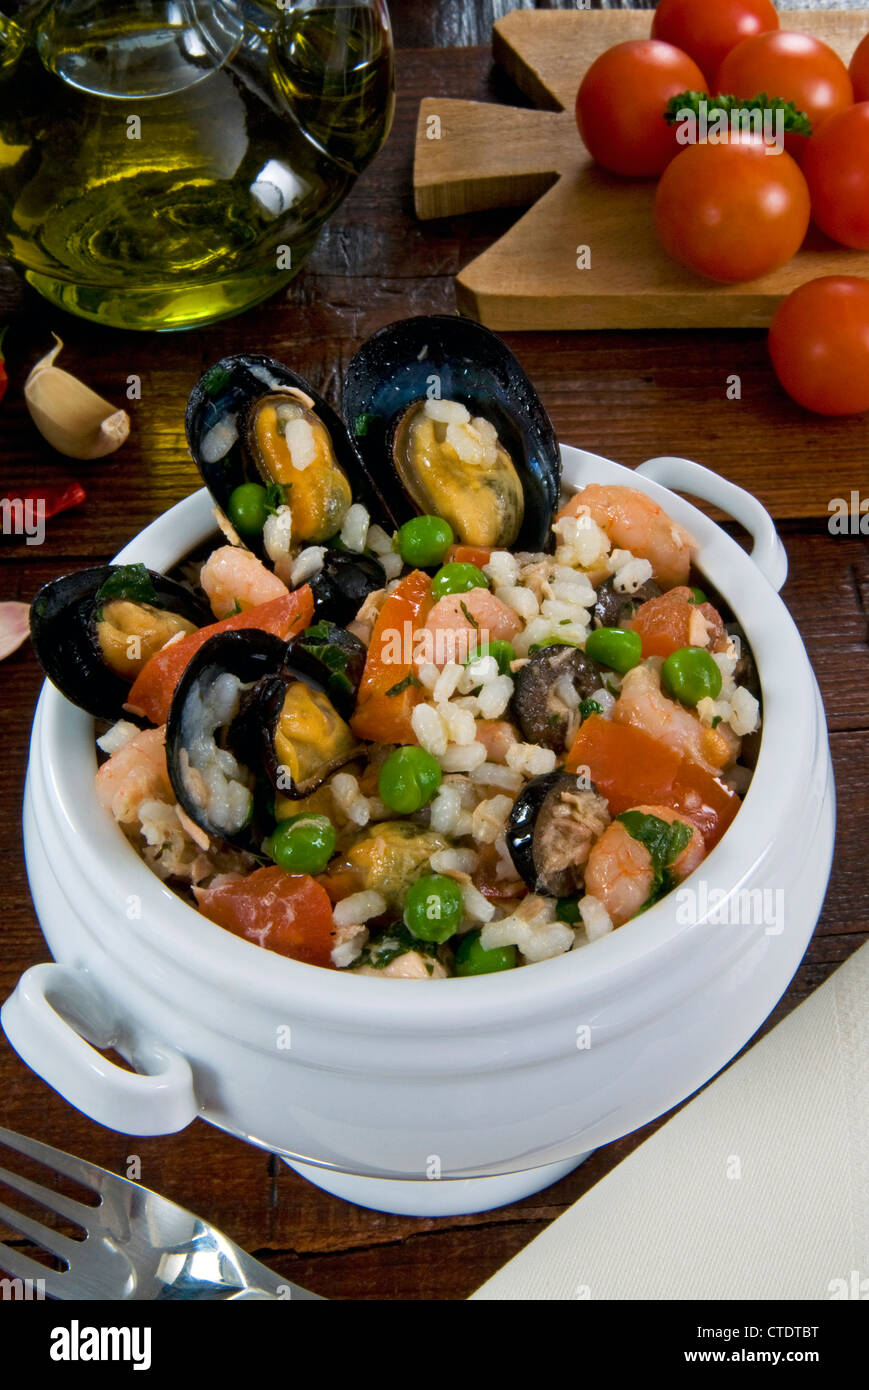 Fruits de mer riz avec moules, crevettes, tomates, olives, petits pois, la cuisine italienne, la cuisine italienne, Italie Banque D'Images